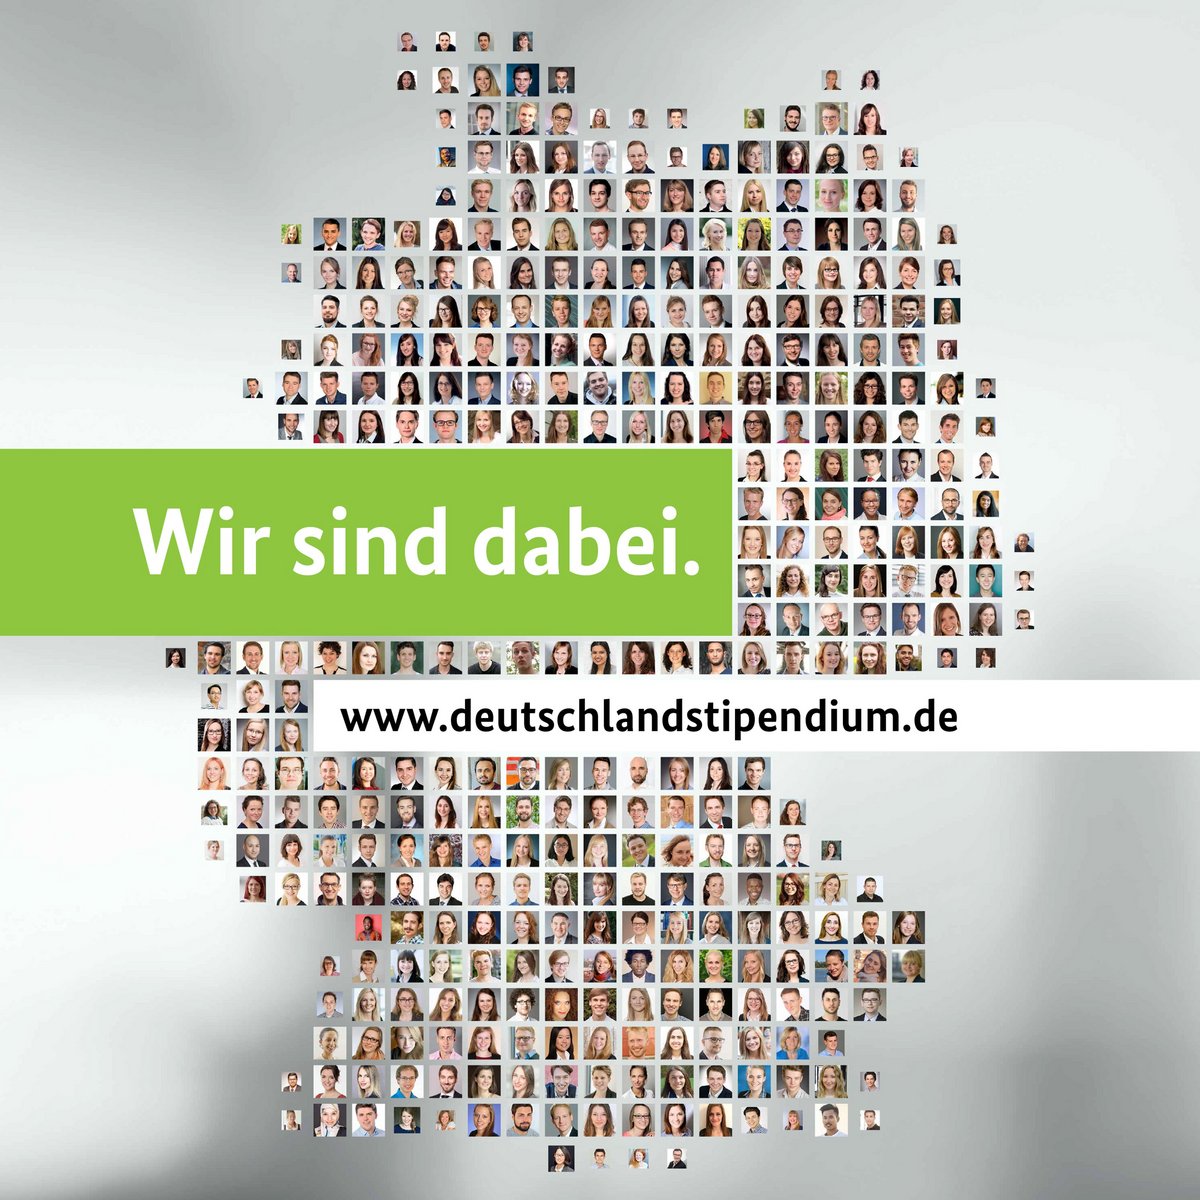 Plakat bestehend aus Personen, die den Umriss der Bundesrepublik Deutschland formen und in der Mitte den Text "Wir sind beim Deutschlandstipendium dabei" repräsentieren.